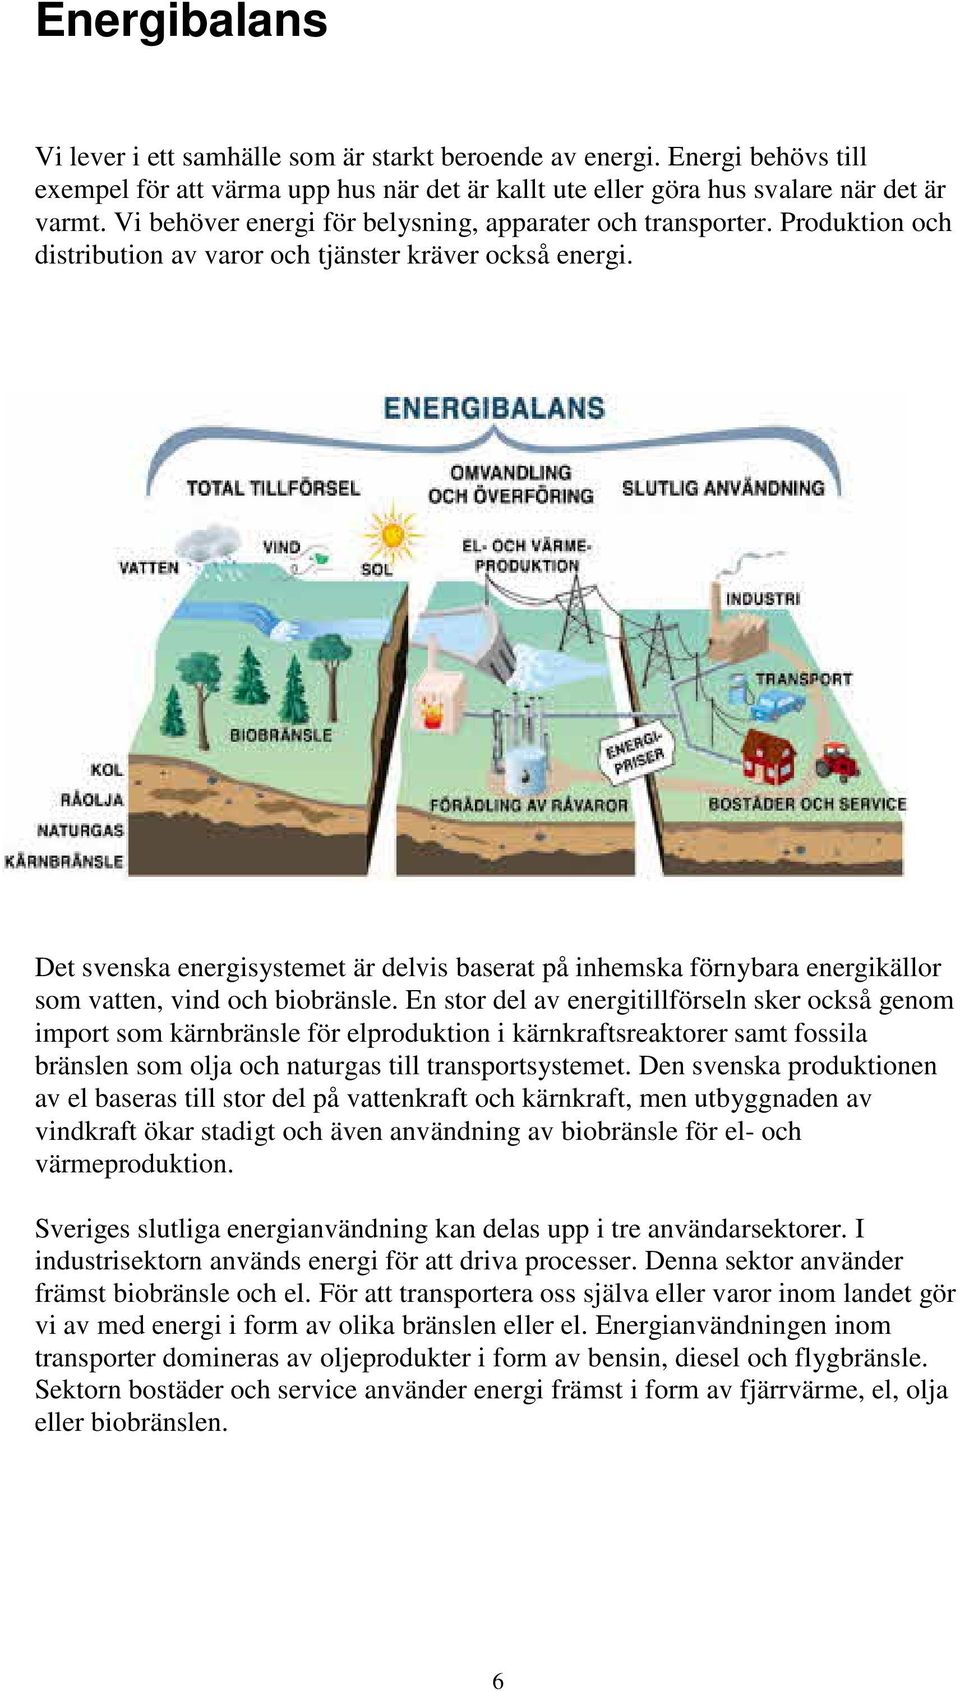 Det svenska energisystemet är delvis baserat på inhemska förnybara energikällor som vatten, vind och biobränsle.